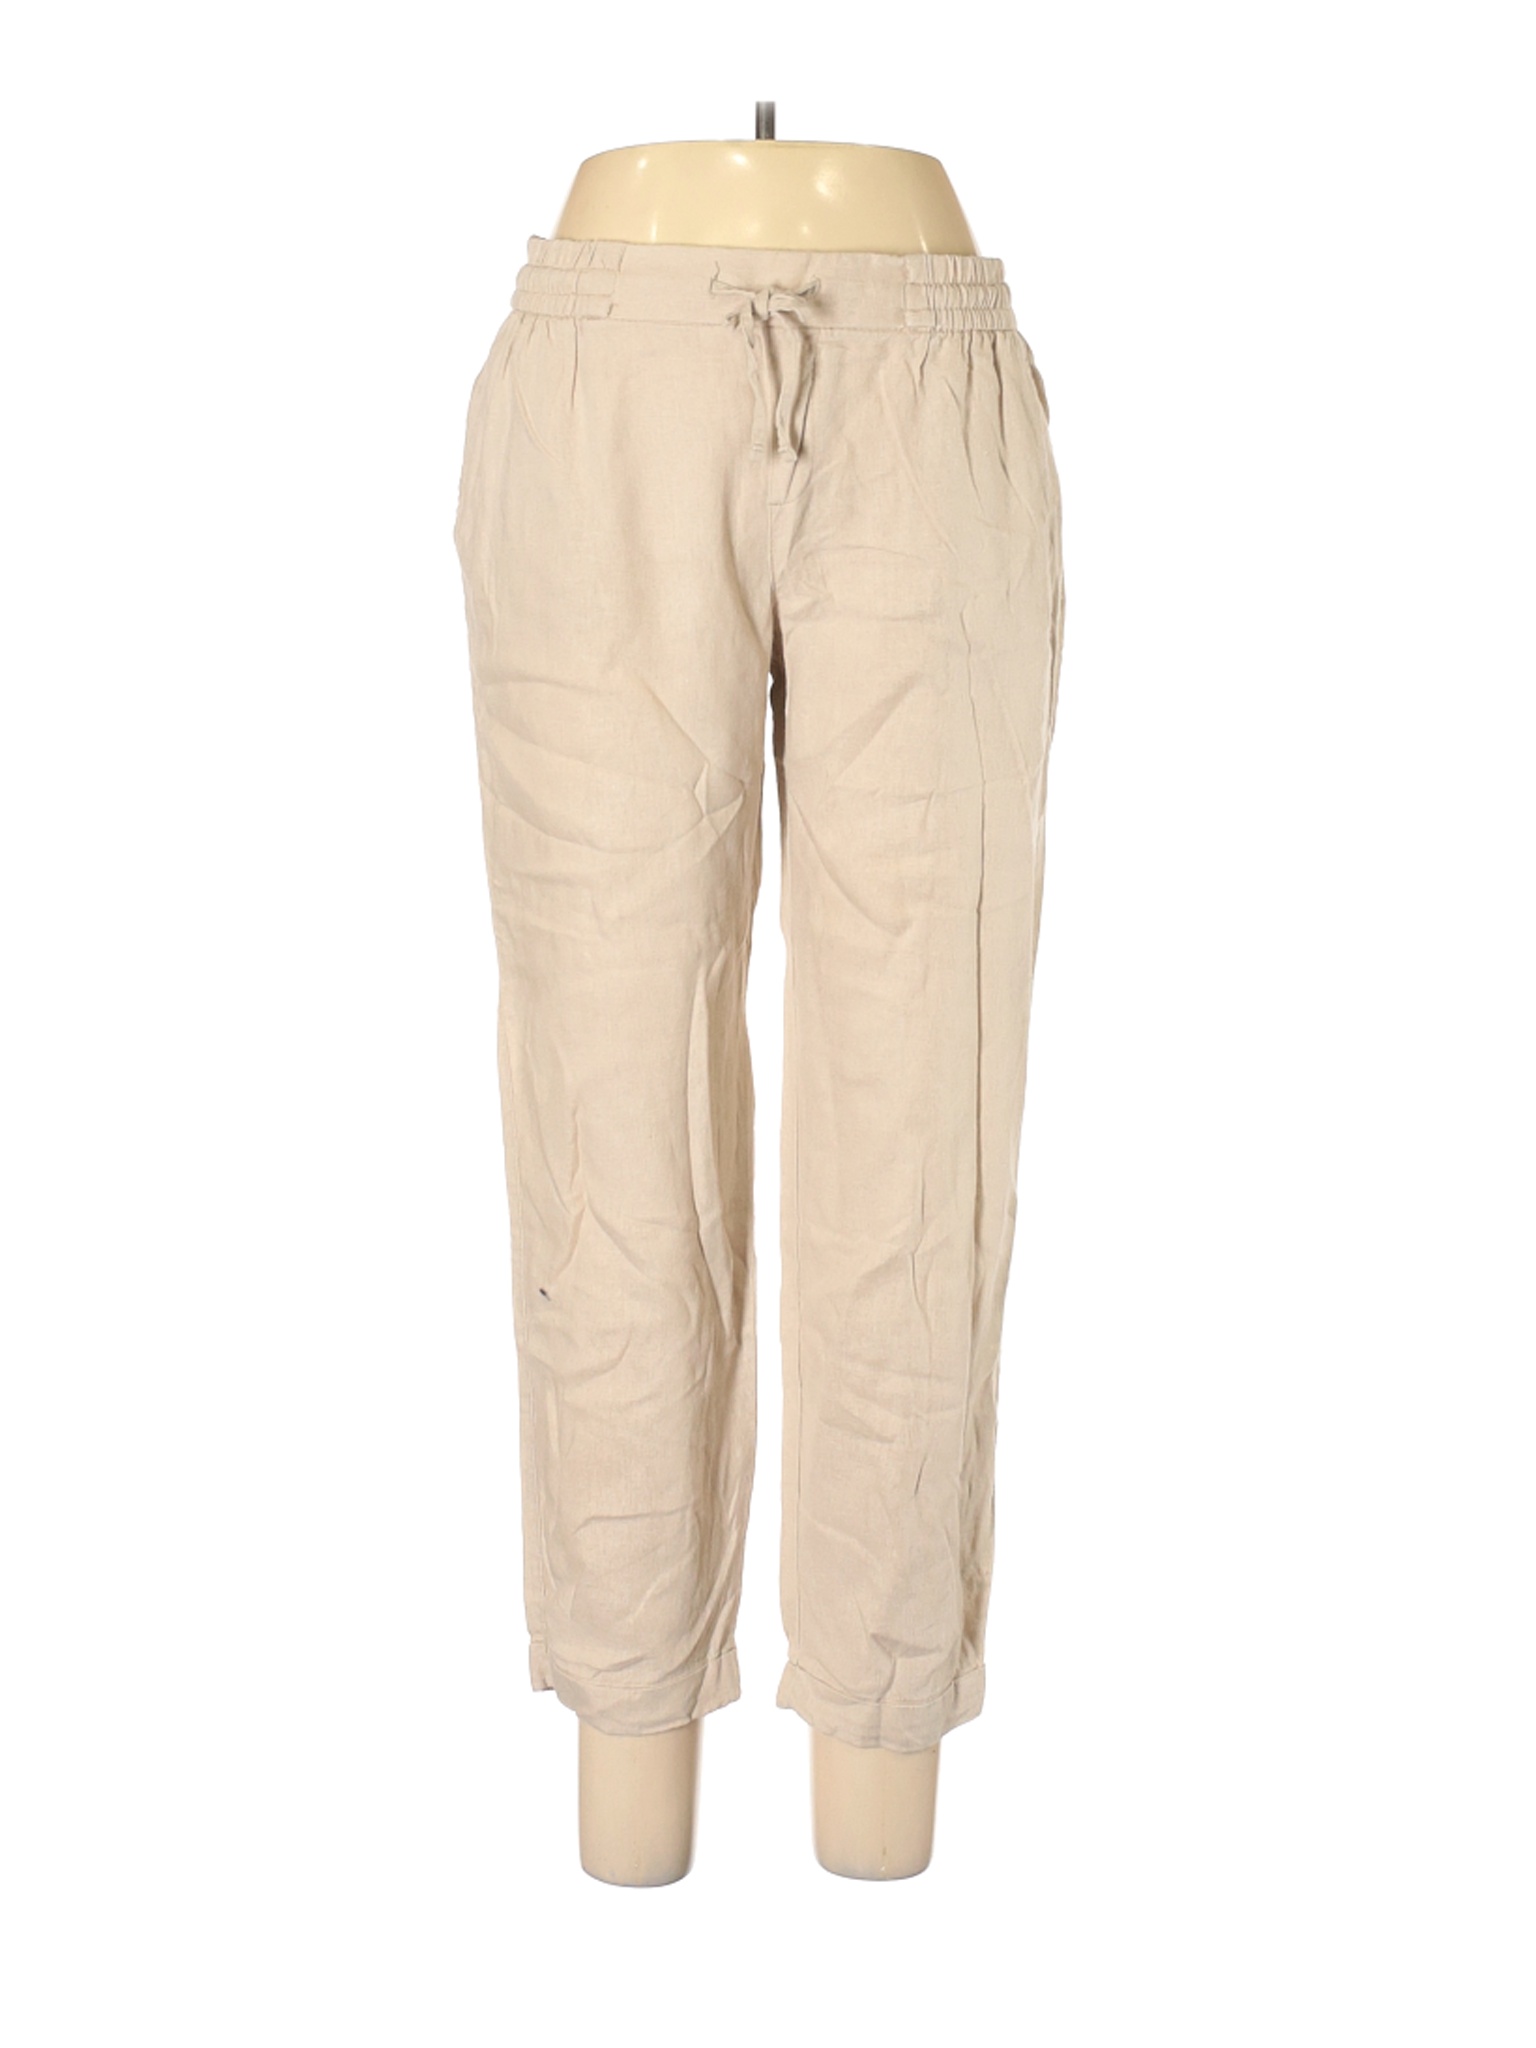 Old Navy Women Brown Linen Pants M | eBay